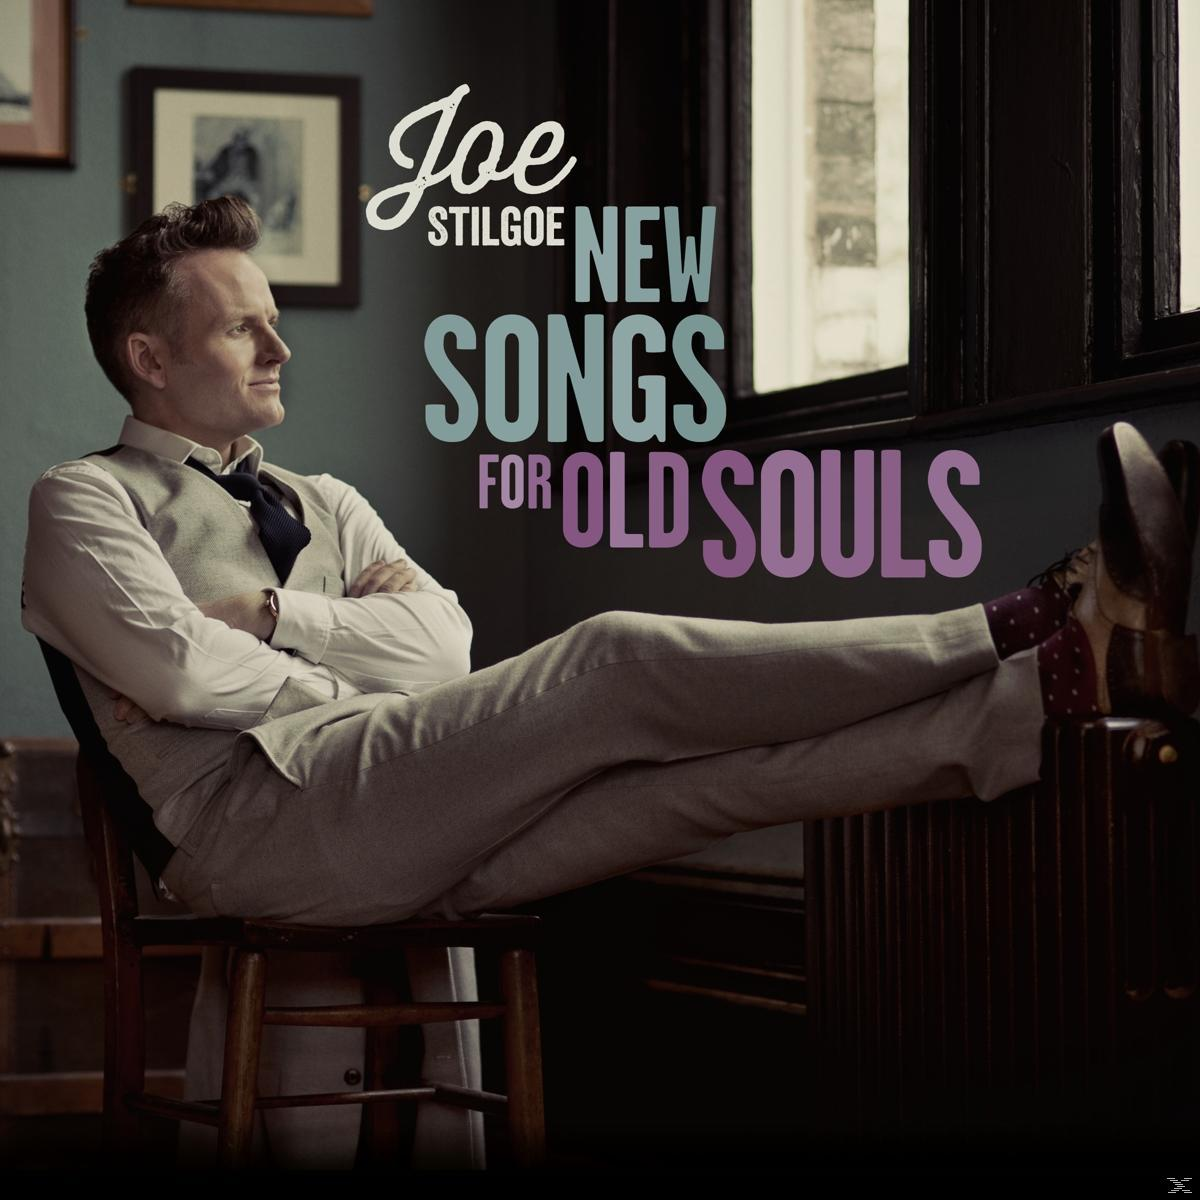 Joe Stilgoe, VARIOUS - NEW SOULS (Vinyl) OLD - FOR SONGS